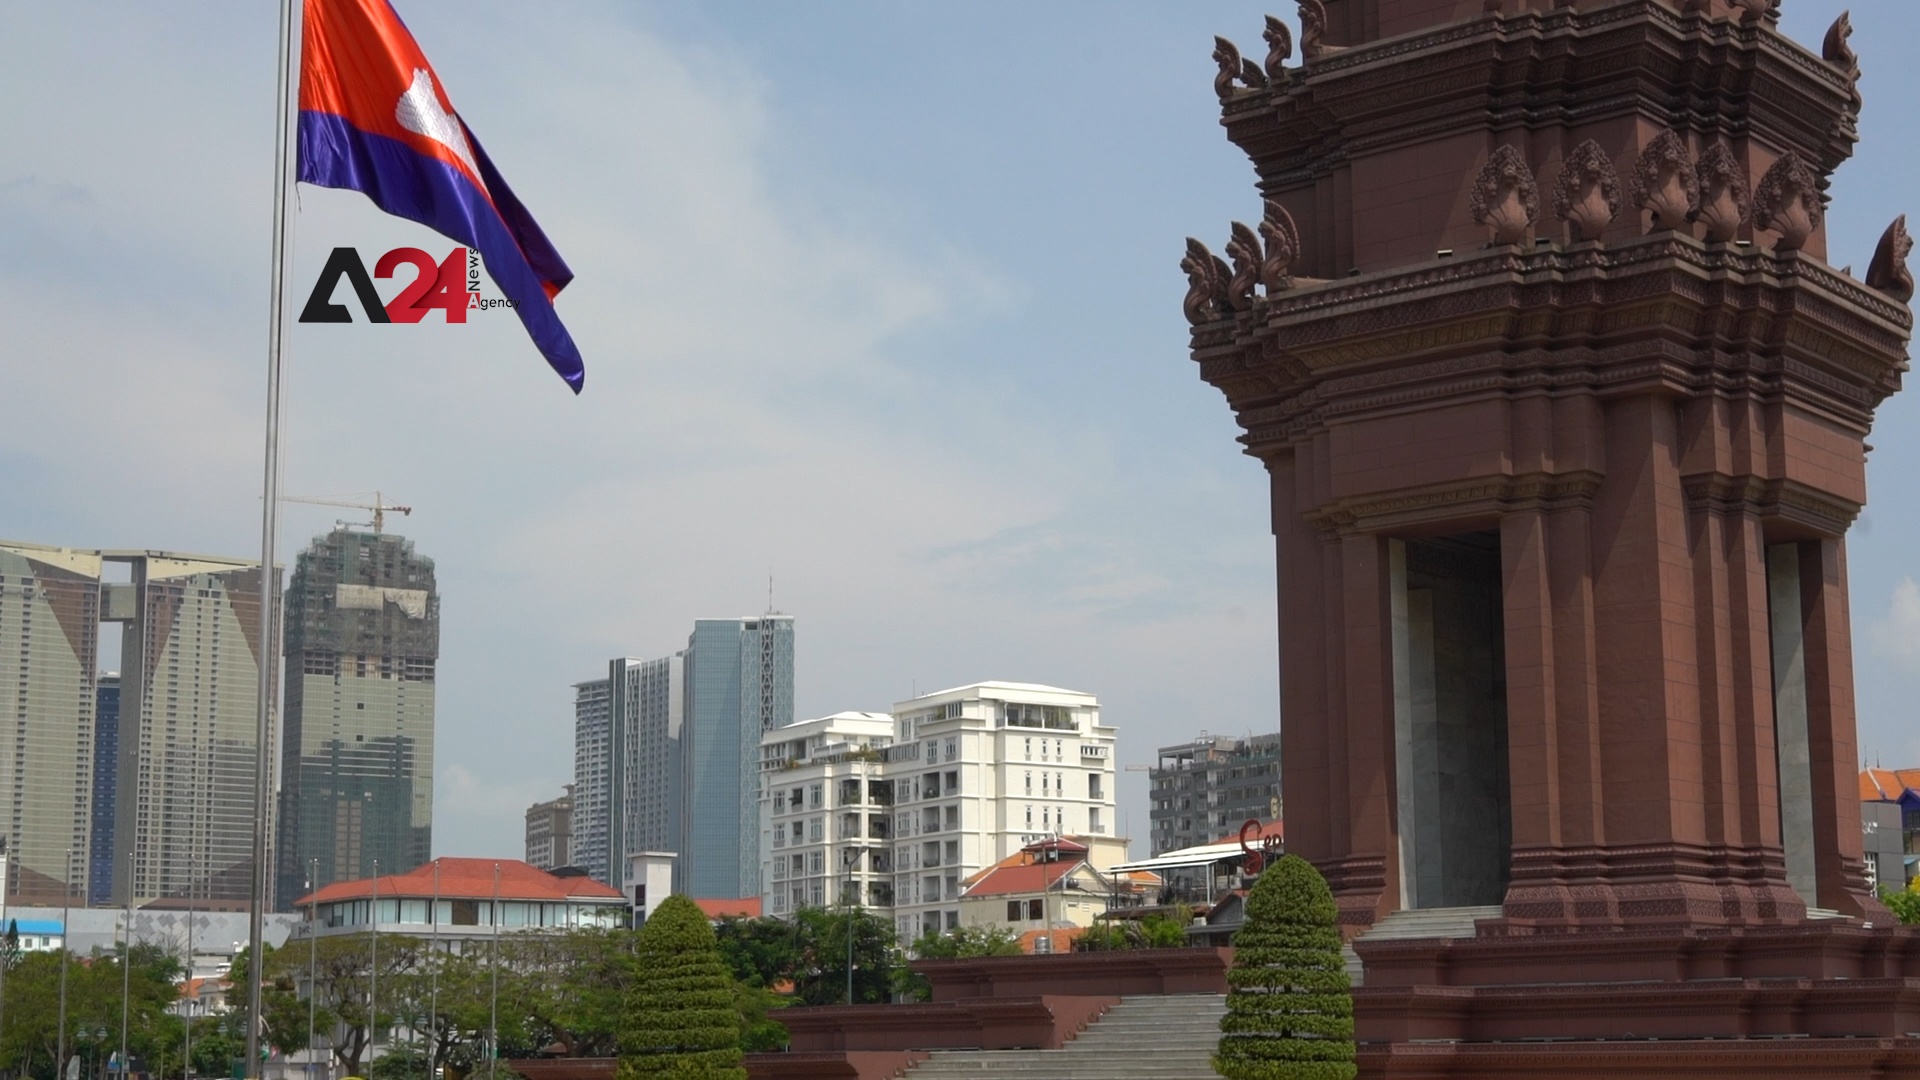 كمبوديا – مقابلة حصرية مع الناطق باسم الحكومة الكمبودية حول العقوبات الأميركية على بلاده